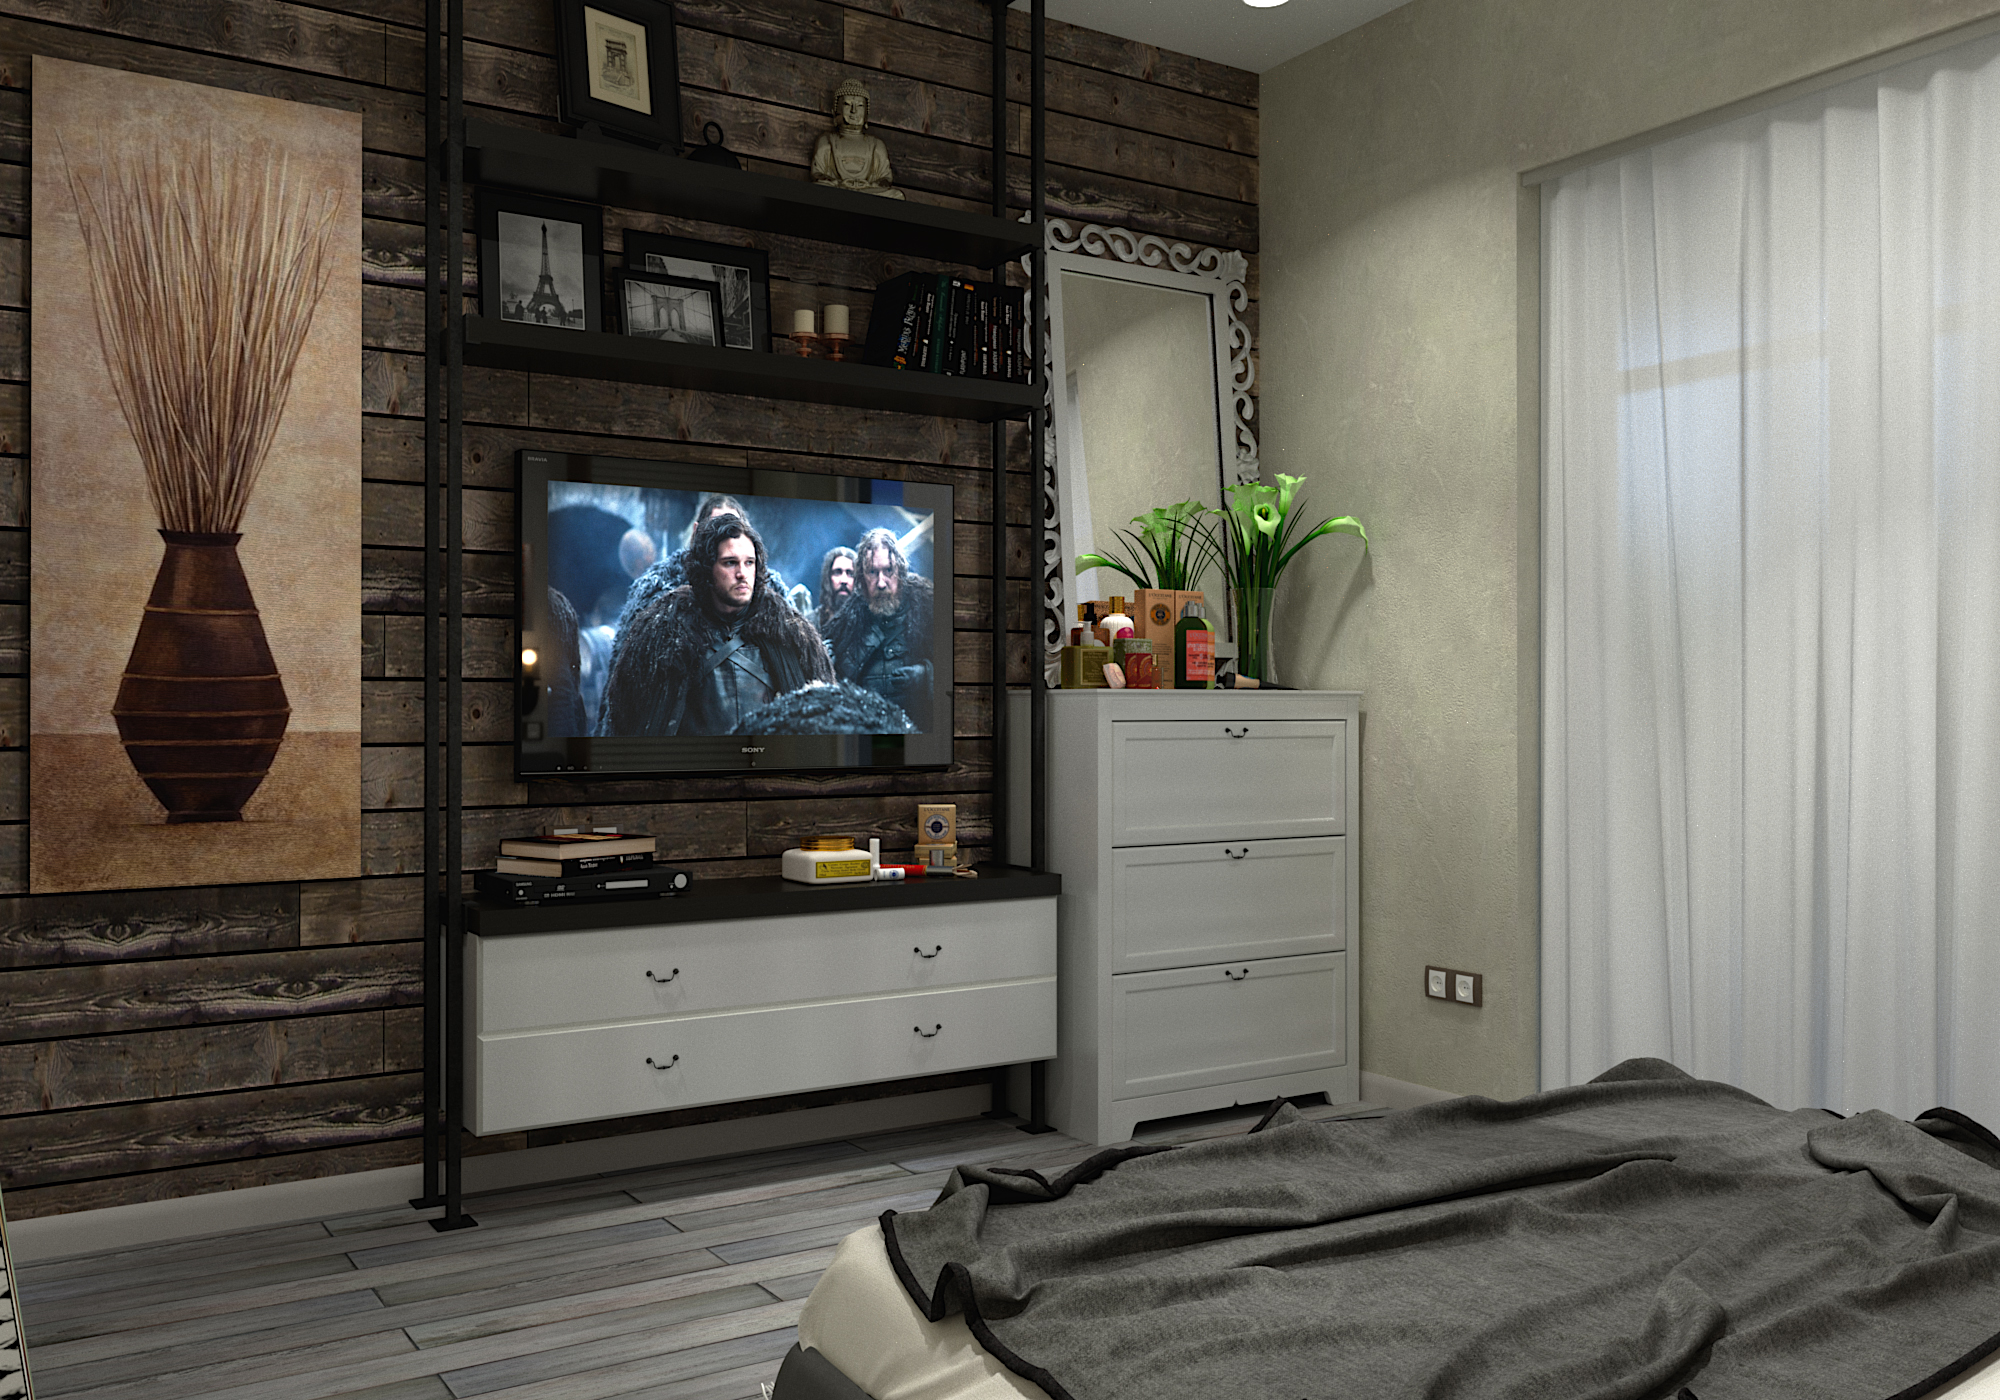 imagen de dormitorio en 3d max corona render